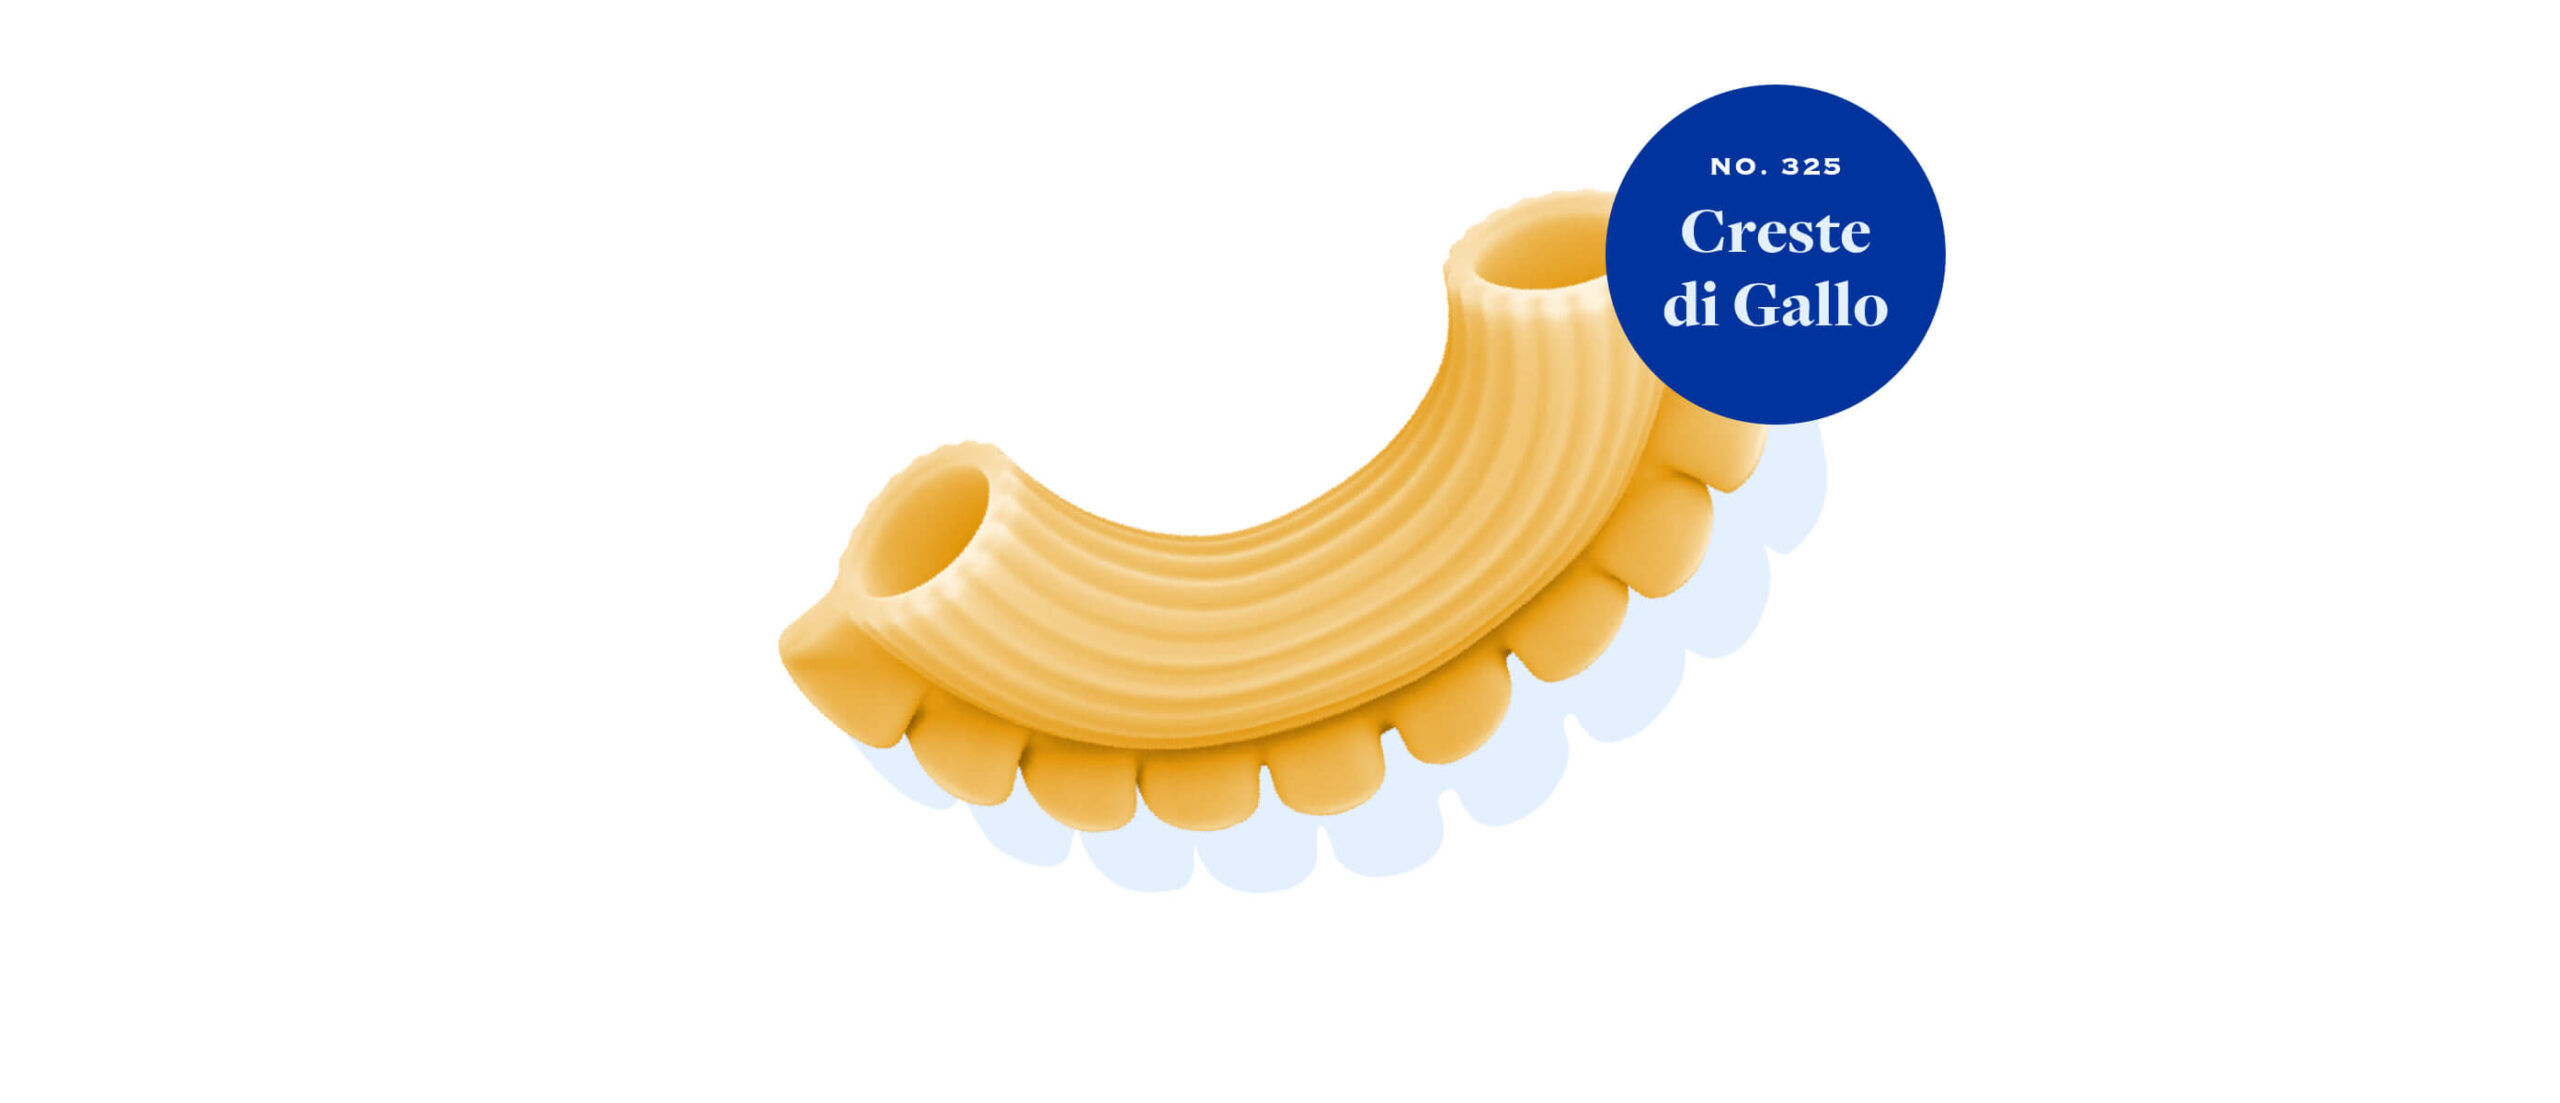 Ronzoni Creste di Gallo, a sunrise-shaped pasta